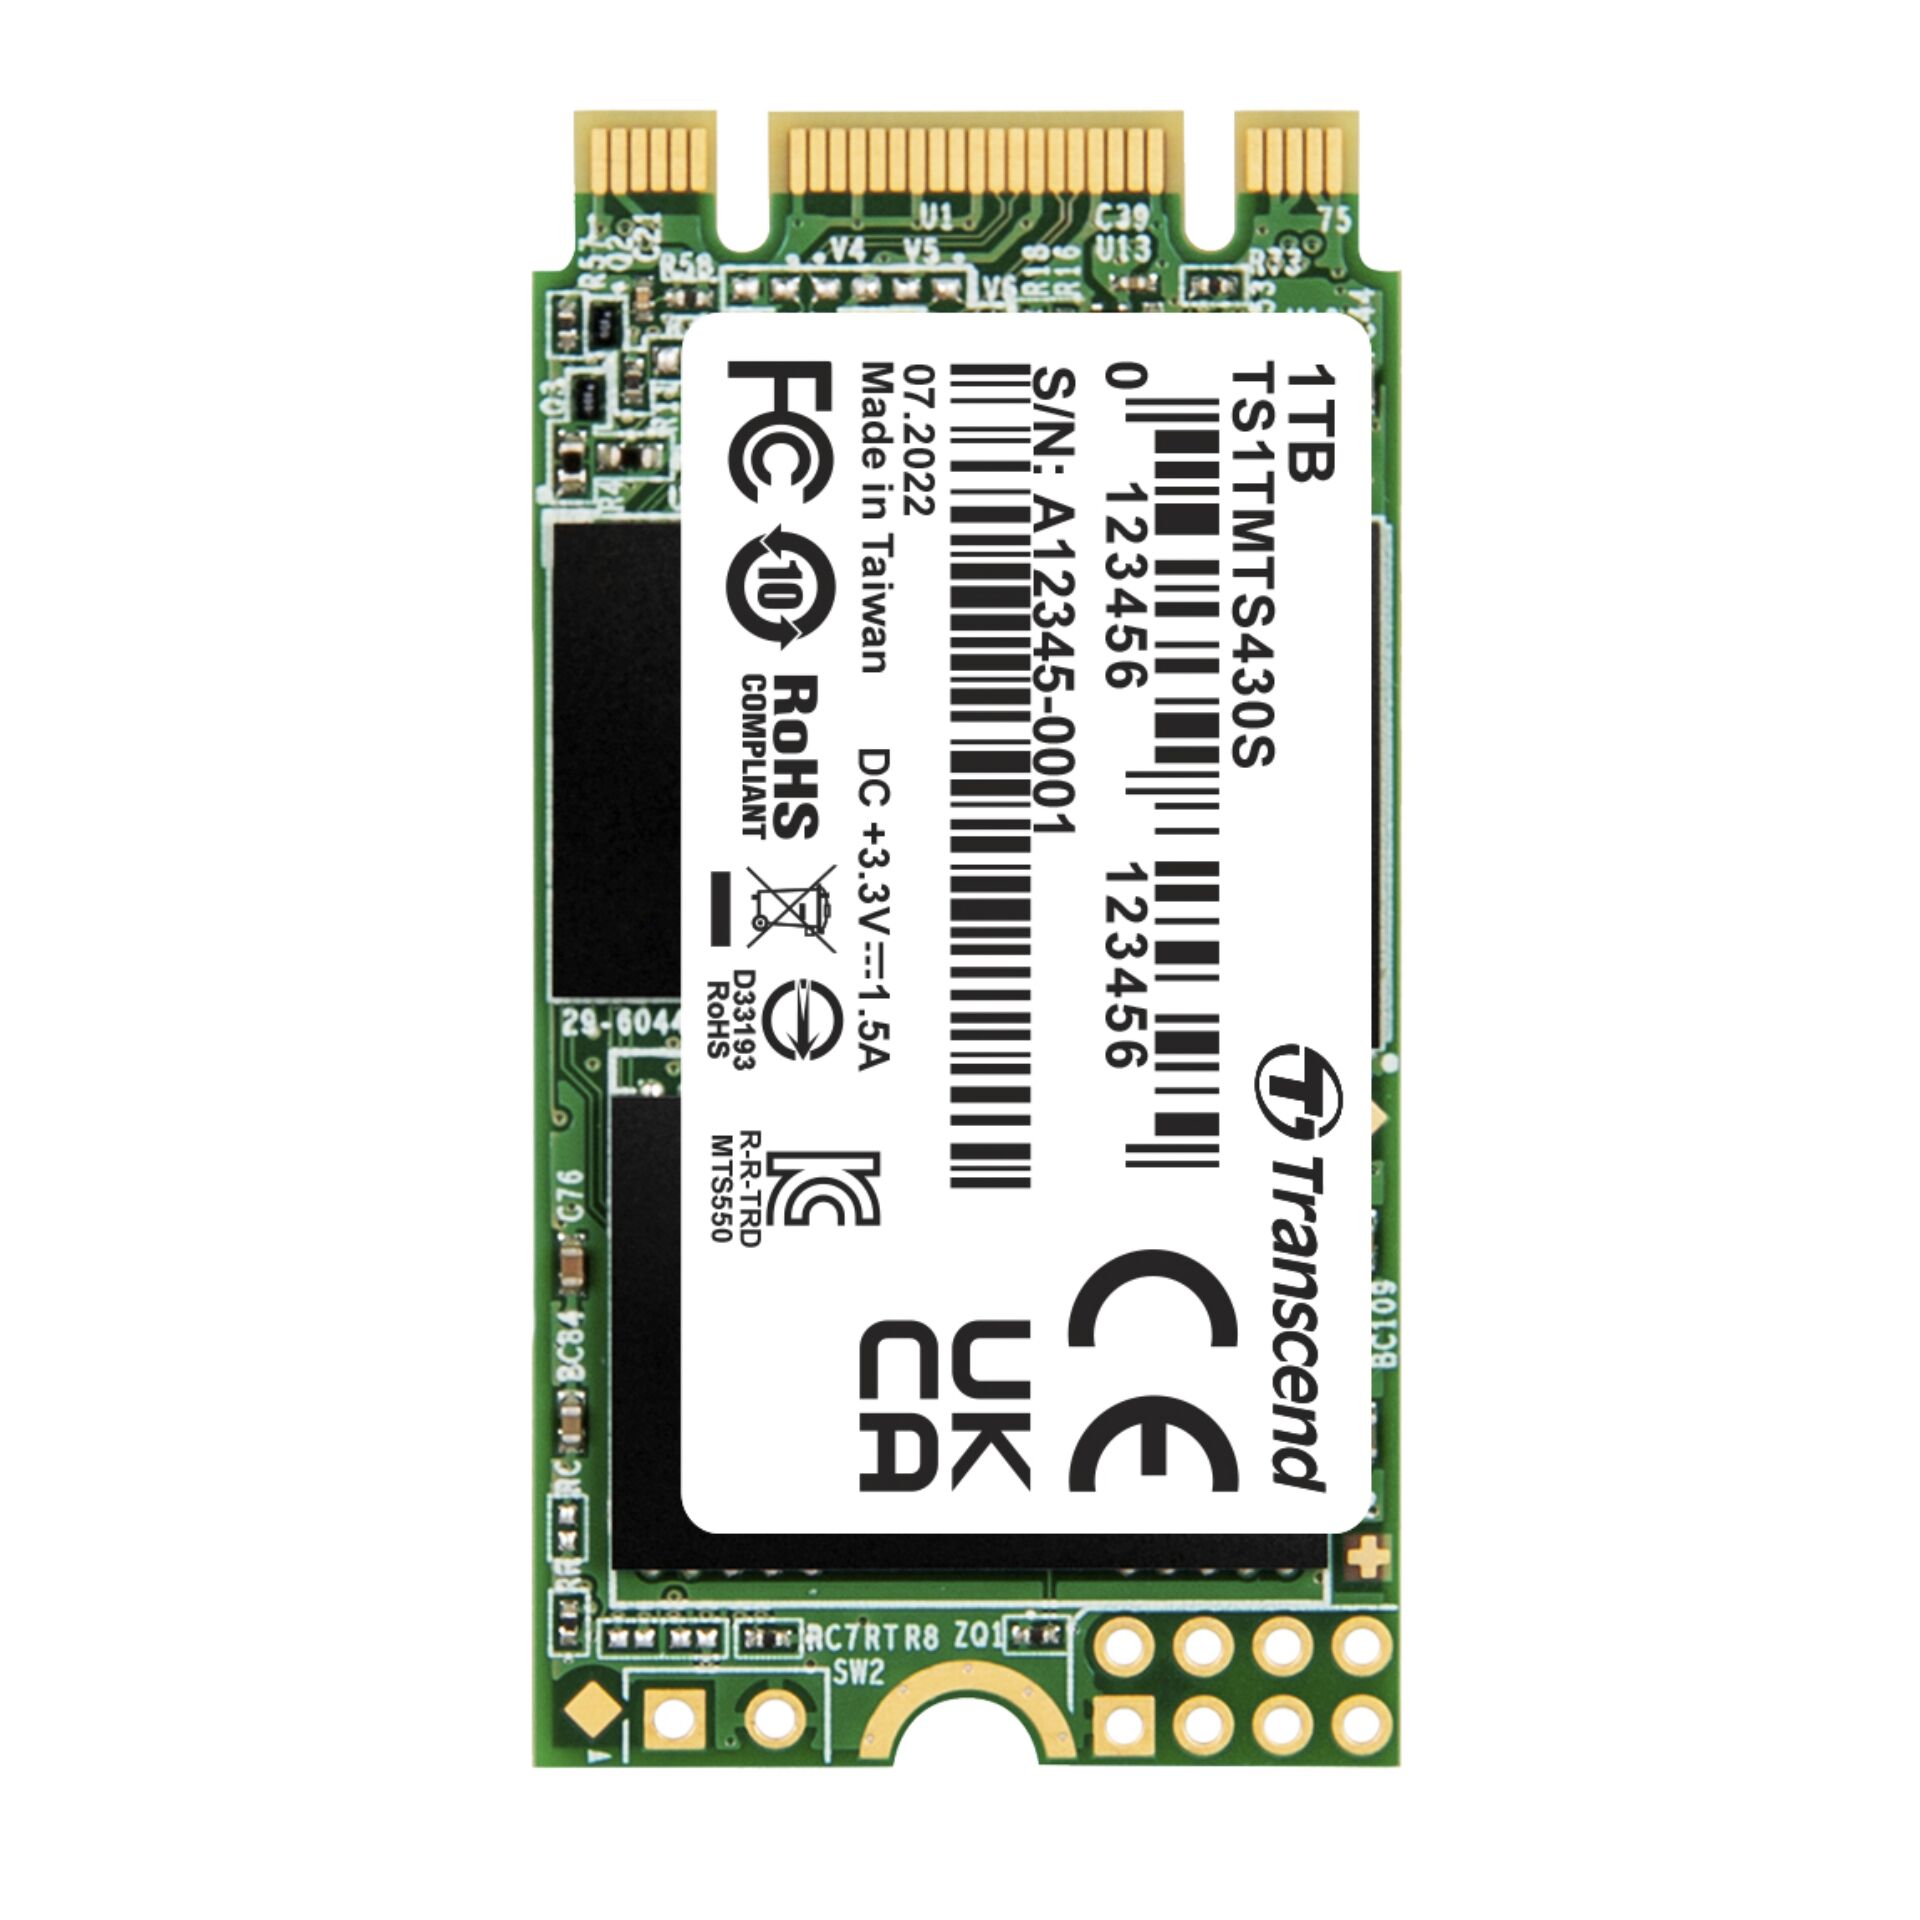 1.0 TB SSD Transcend MTS430S SSD, M.2/B-M-Key (SATA 6Gb/s), lesen: 560MB/s, schreiben: 520MB/s, TBW: 560TB